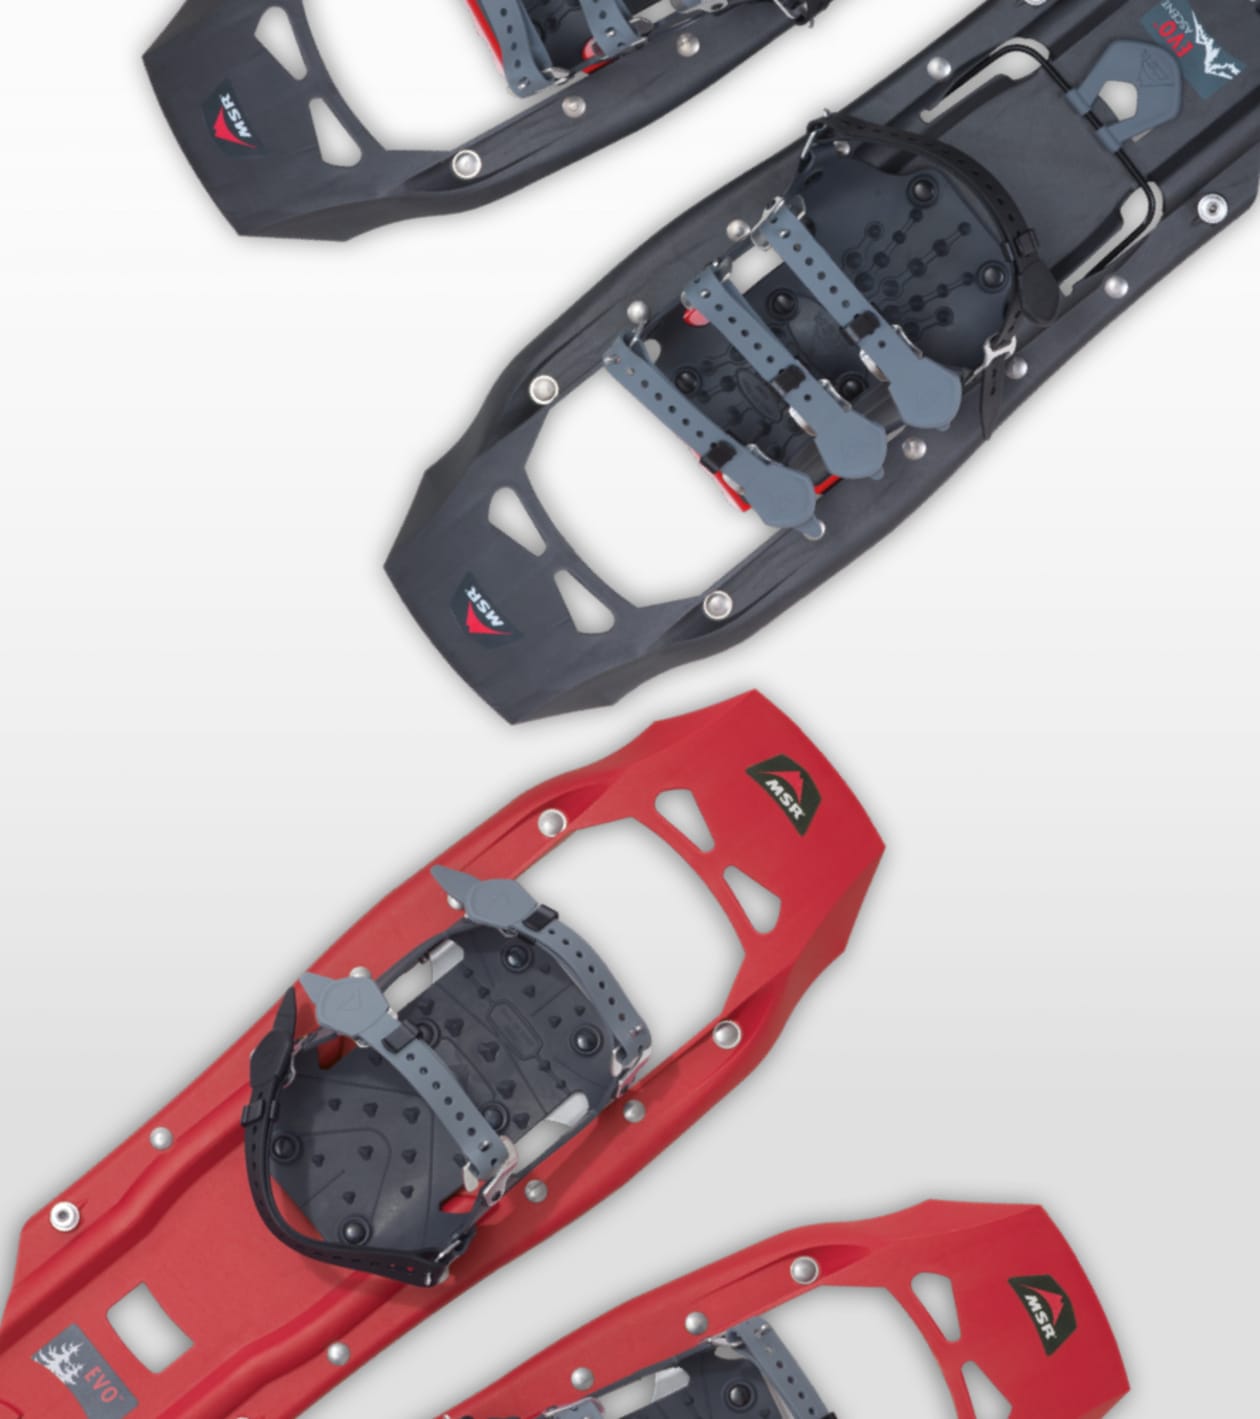 Evo™ Ascent Snowshoe Kit | Snowshoe + Pole Kits | MSR